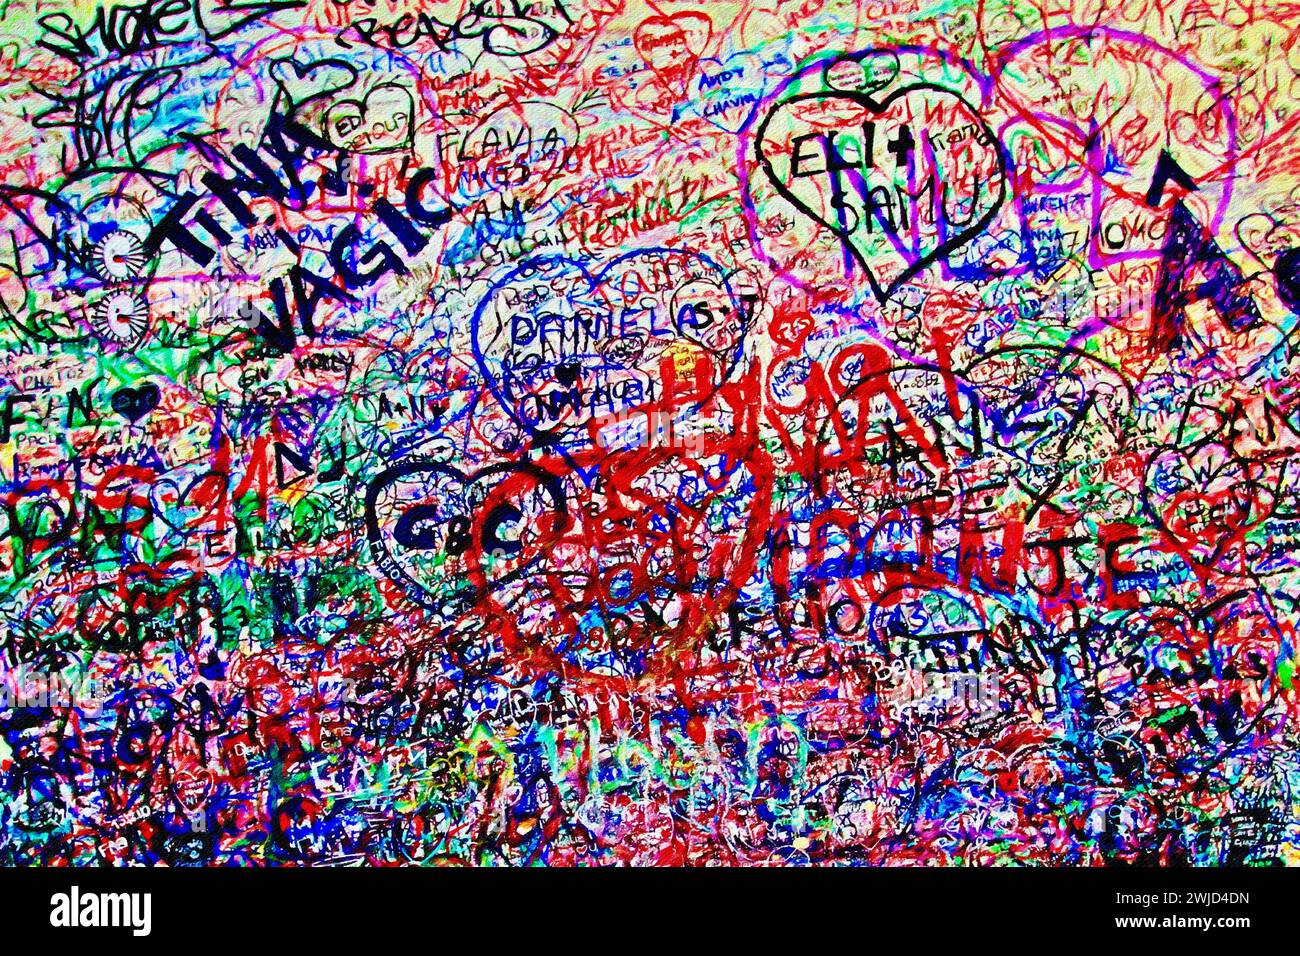 Juliet's Wall, Verona, Italy. Stock Photo